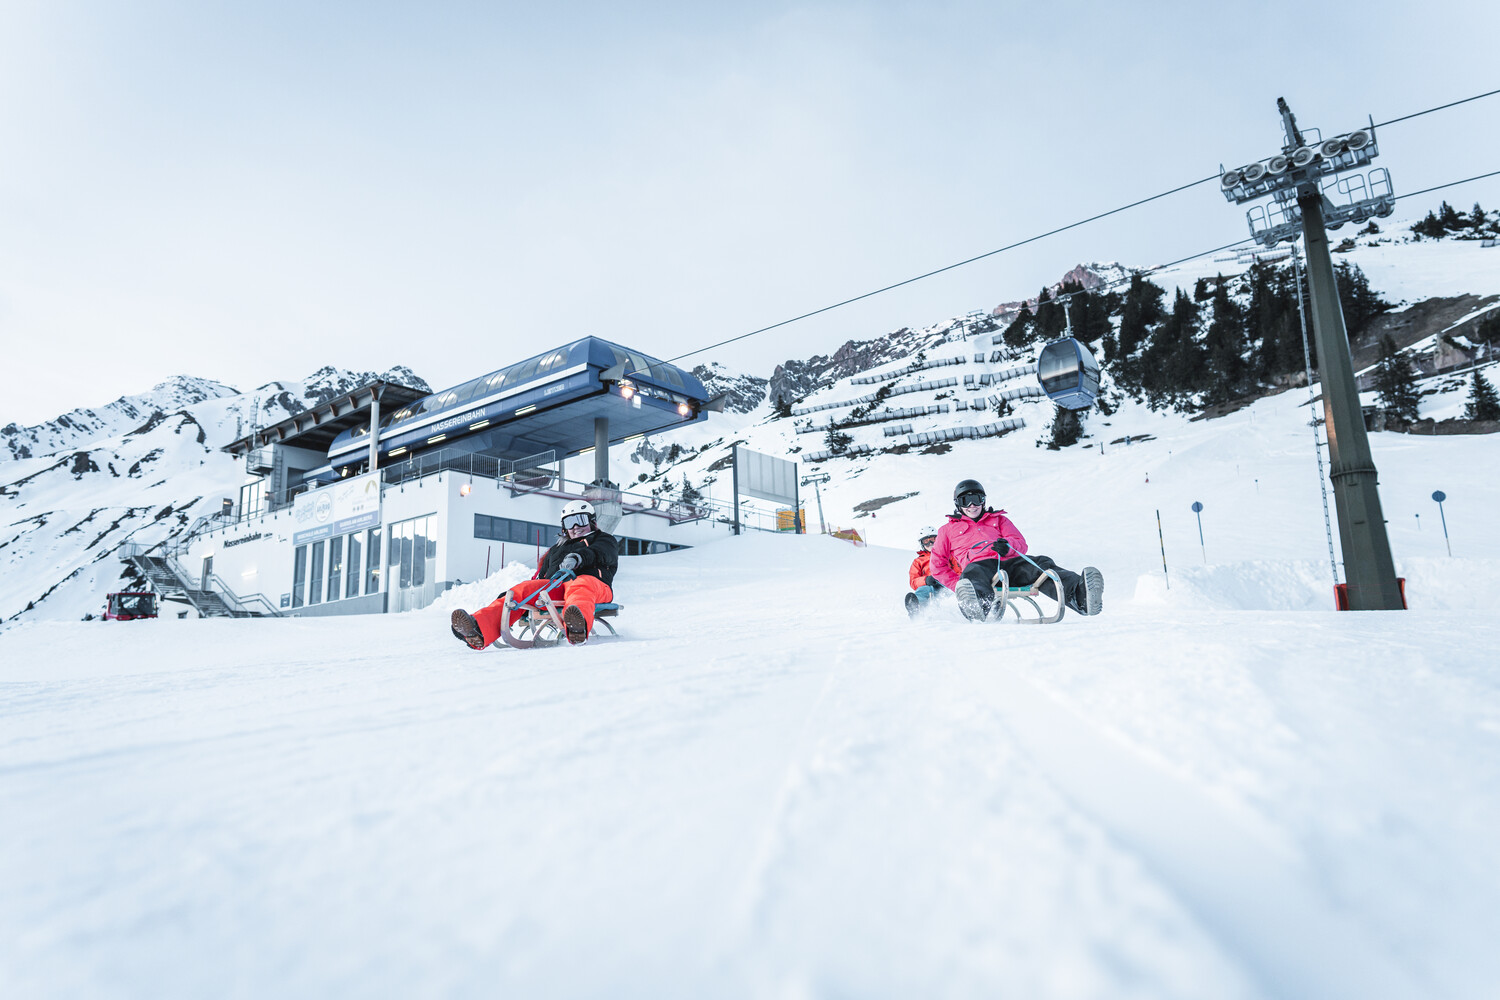 Rodeln in St. Anton am Arlberg - Hotel die Arlbergerin - Winteraktivitäten in Tirol